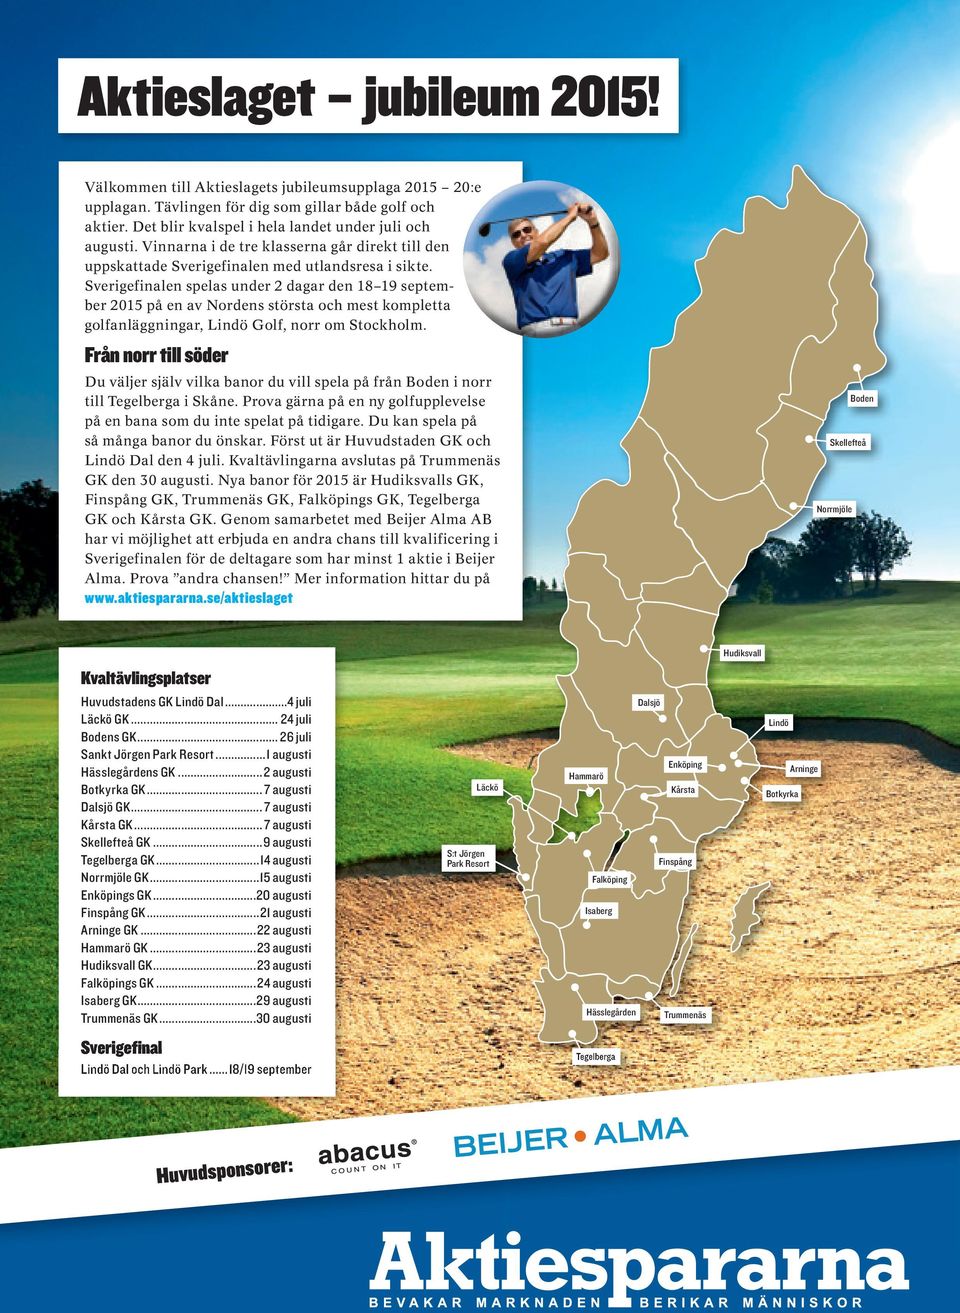 Sverigefinalen spelas under 2 dagar den 18 19 september 2015 på en av Nordens största och mest kompletta golfanläggningar, Lindö Golf, norr om Stockholm.